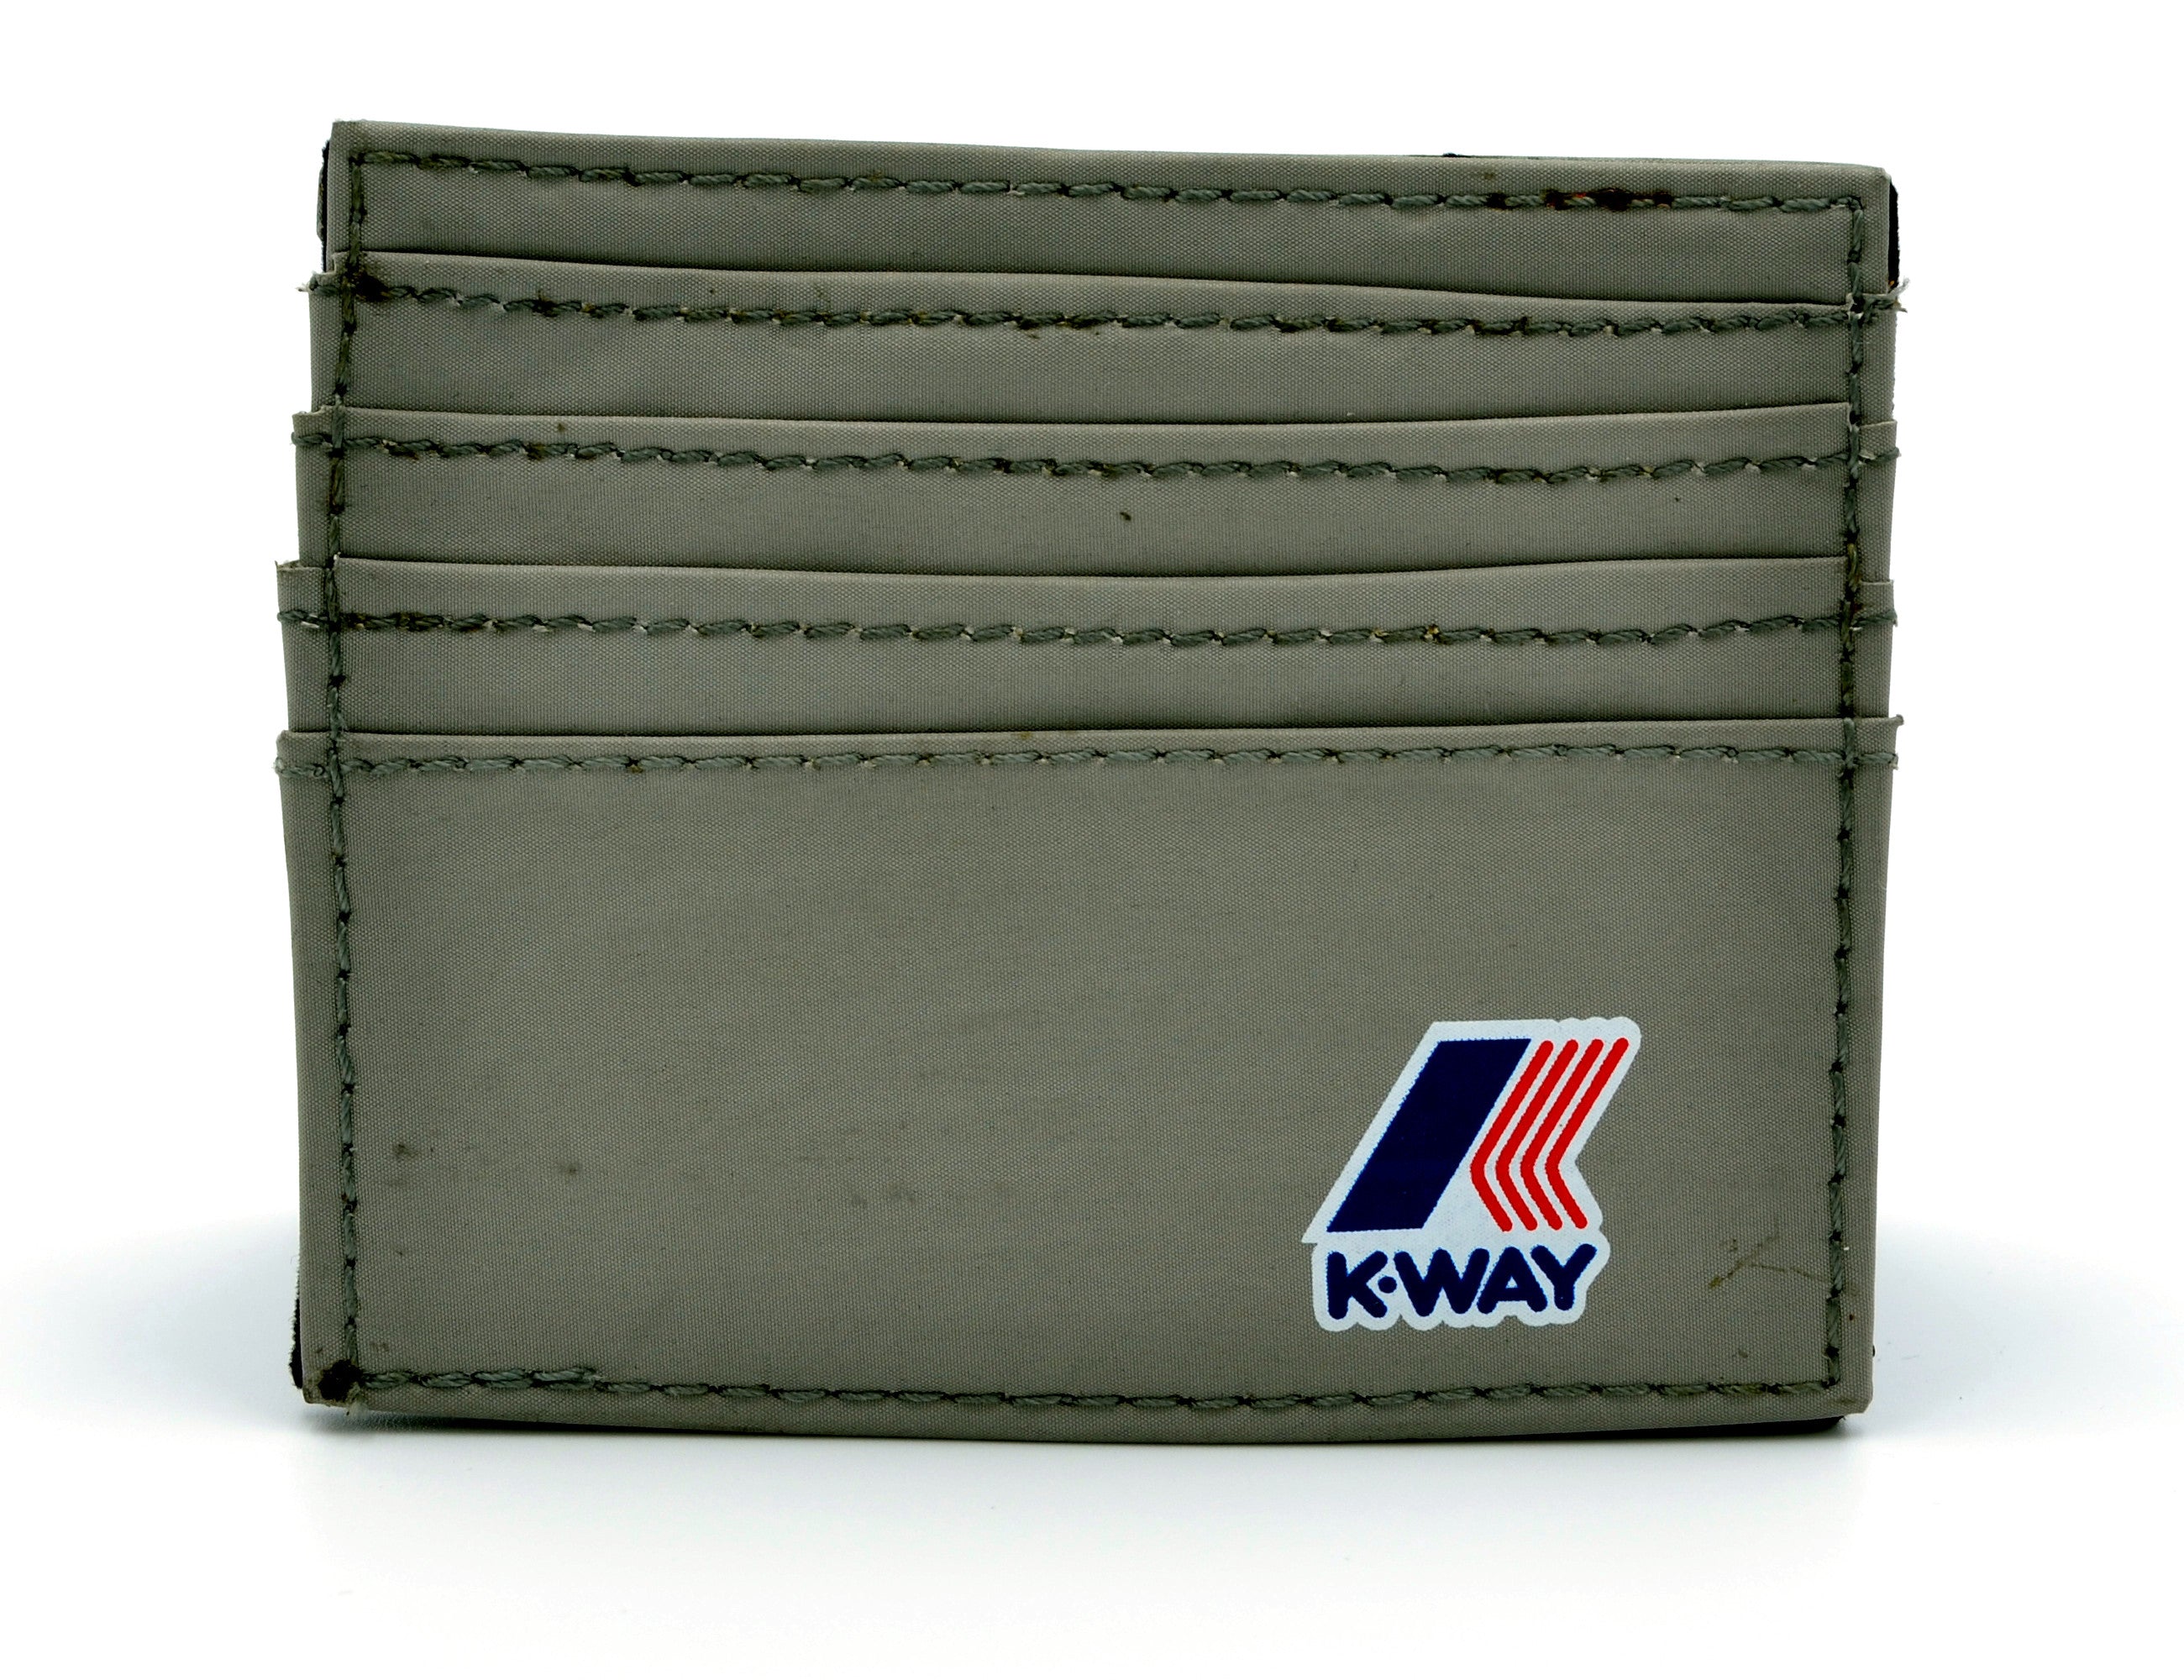 K-way cardholder